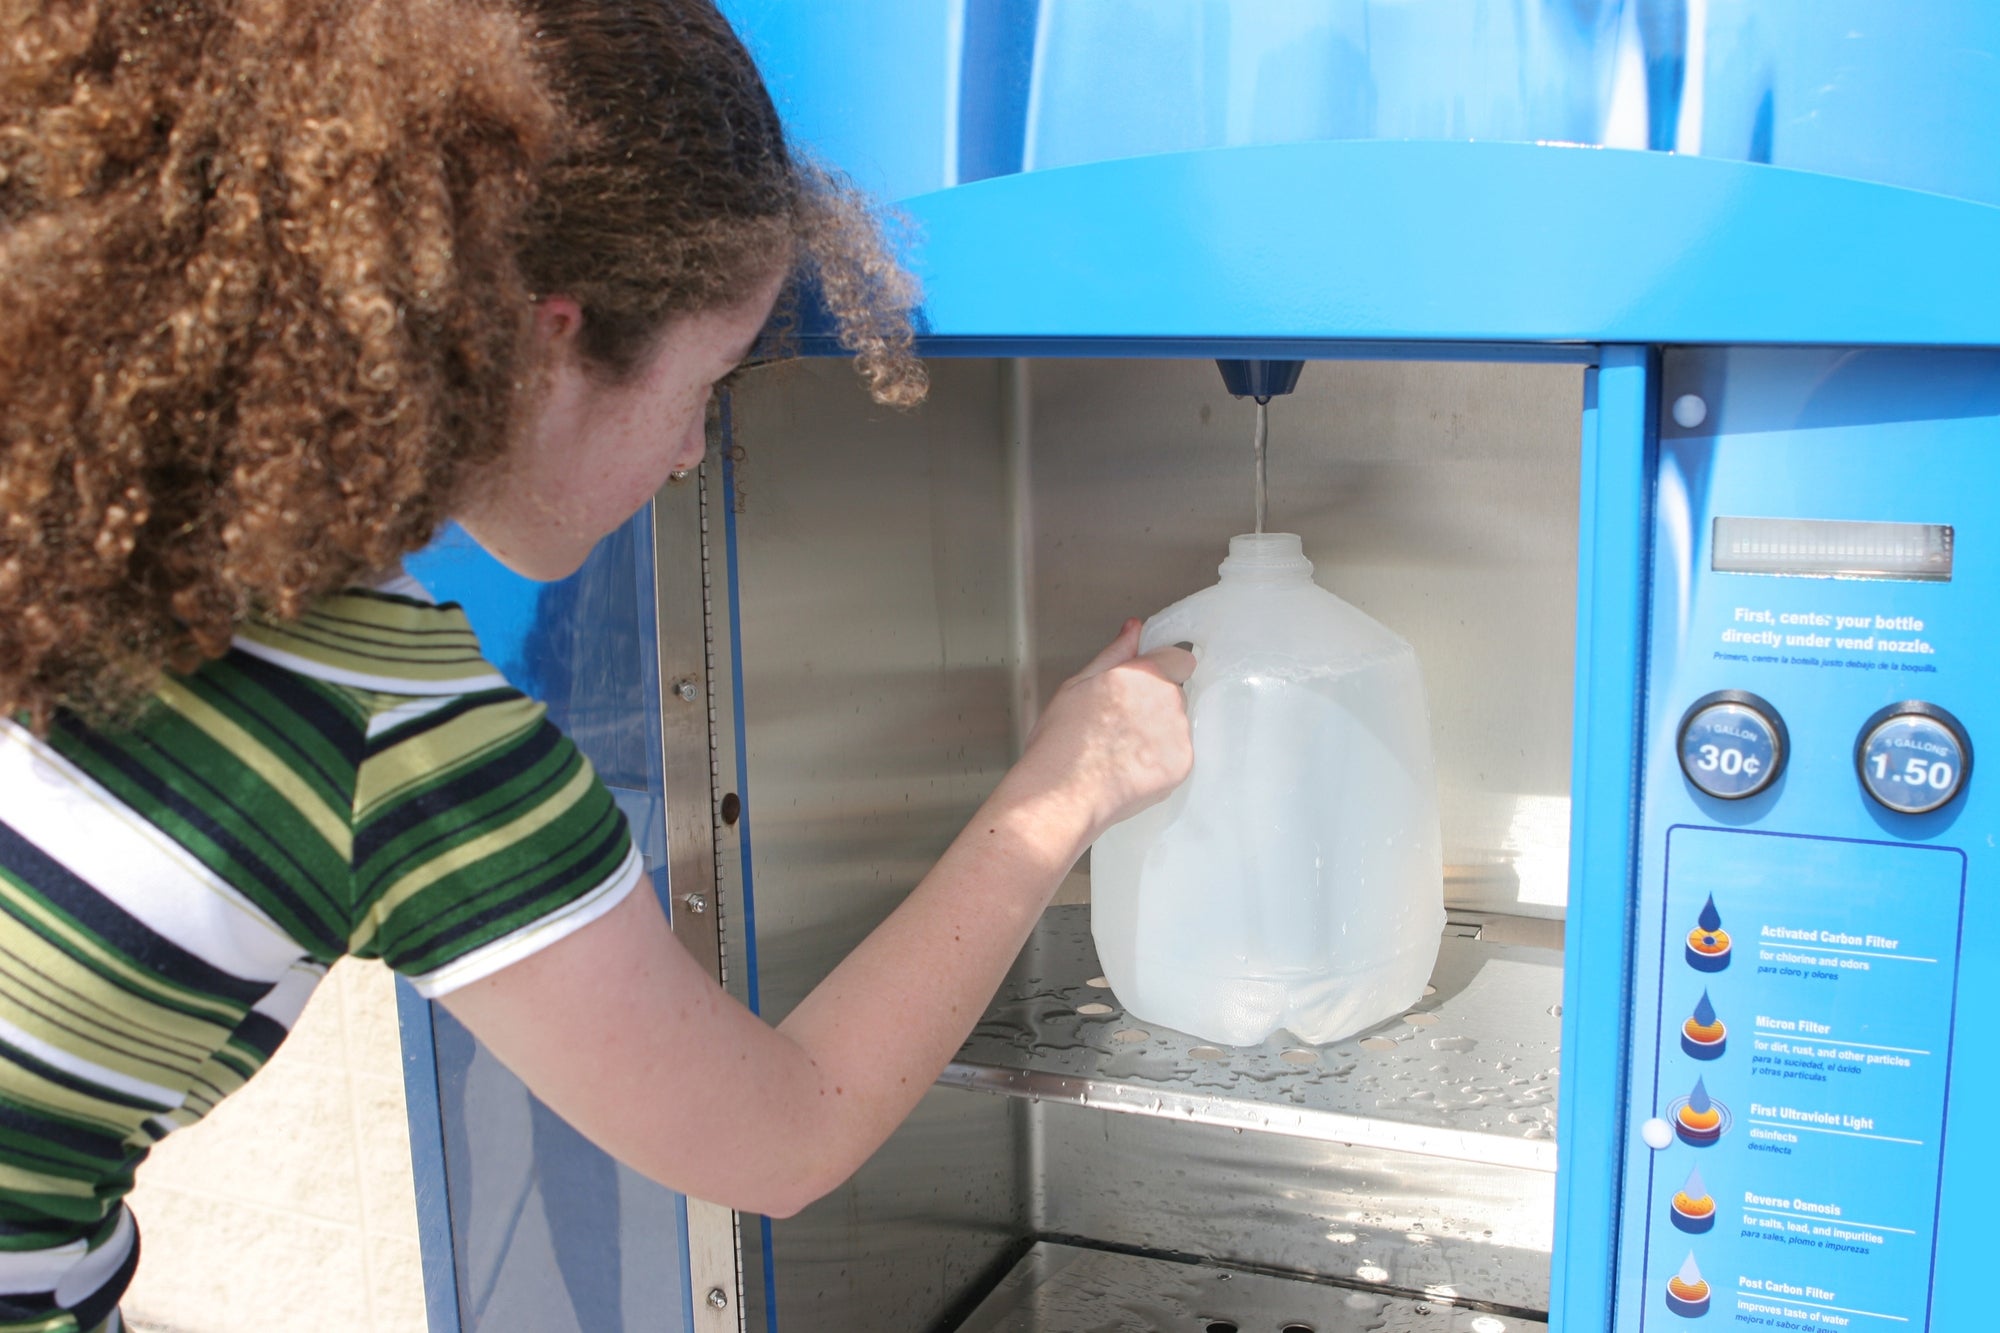 Пена пропускает воду. Аппарат питьевой воды. Питьевая вода из аппарата. Торговый автомат питьевой воды. Точка питьевой воды.